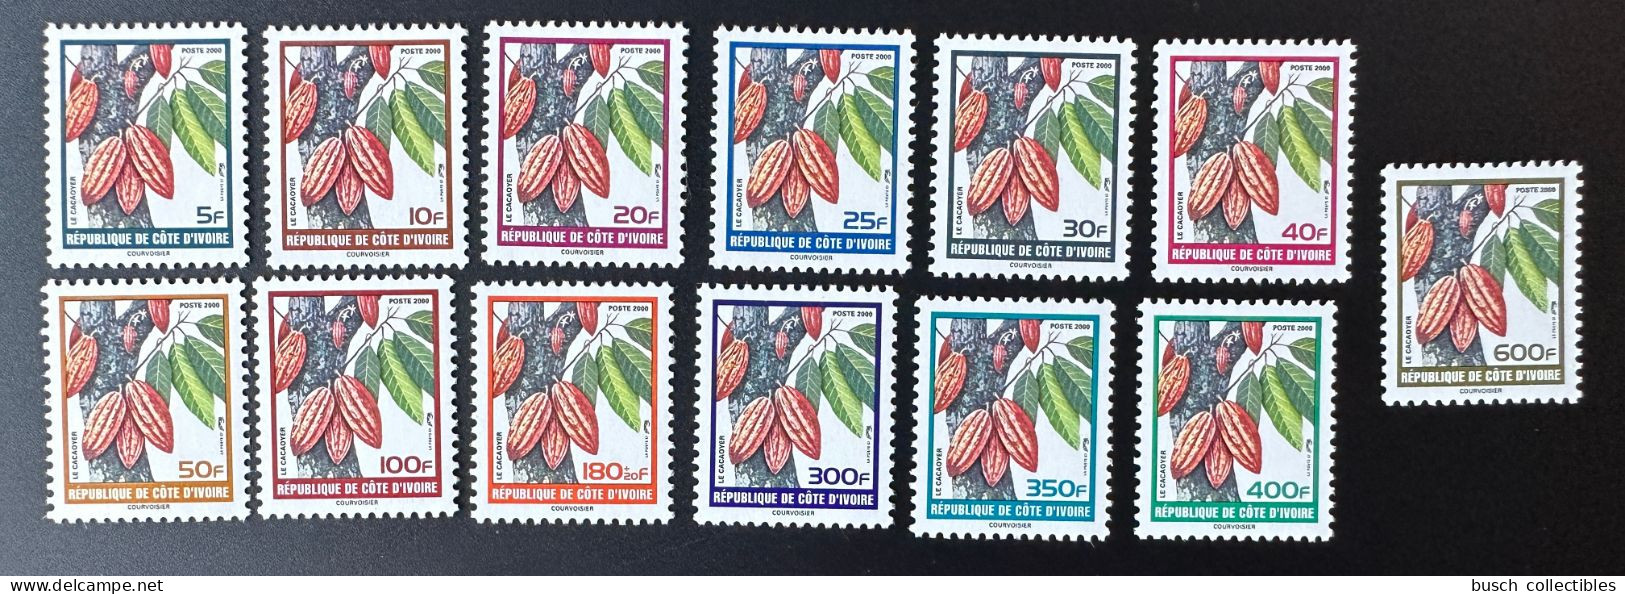 Côte D'Ivoire Ivory Coast Elfenbeinküste 2000 Mi. 1241 - 1253 Kakaobaum Cacaoyer Cocoa Freimarken Definitives Courants - Ivory Coast (1960-...)